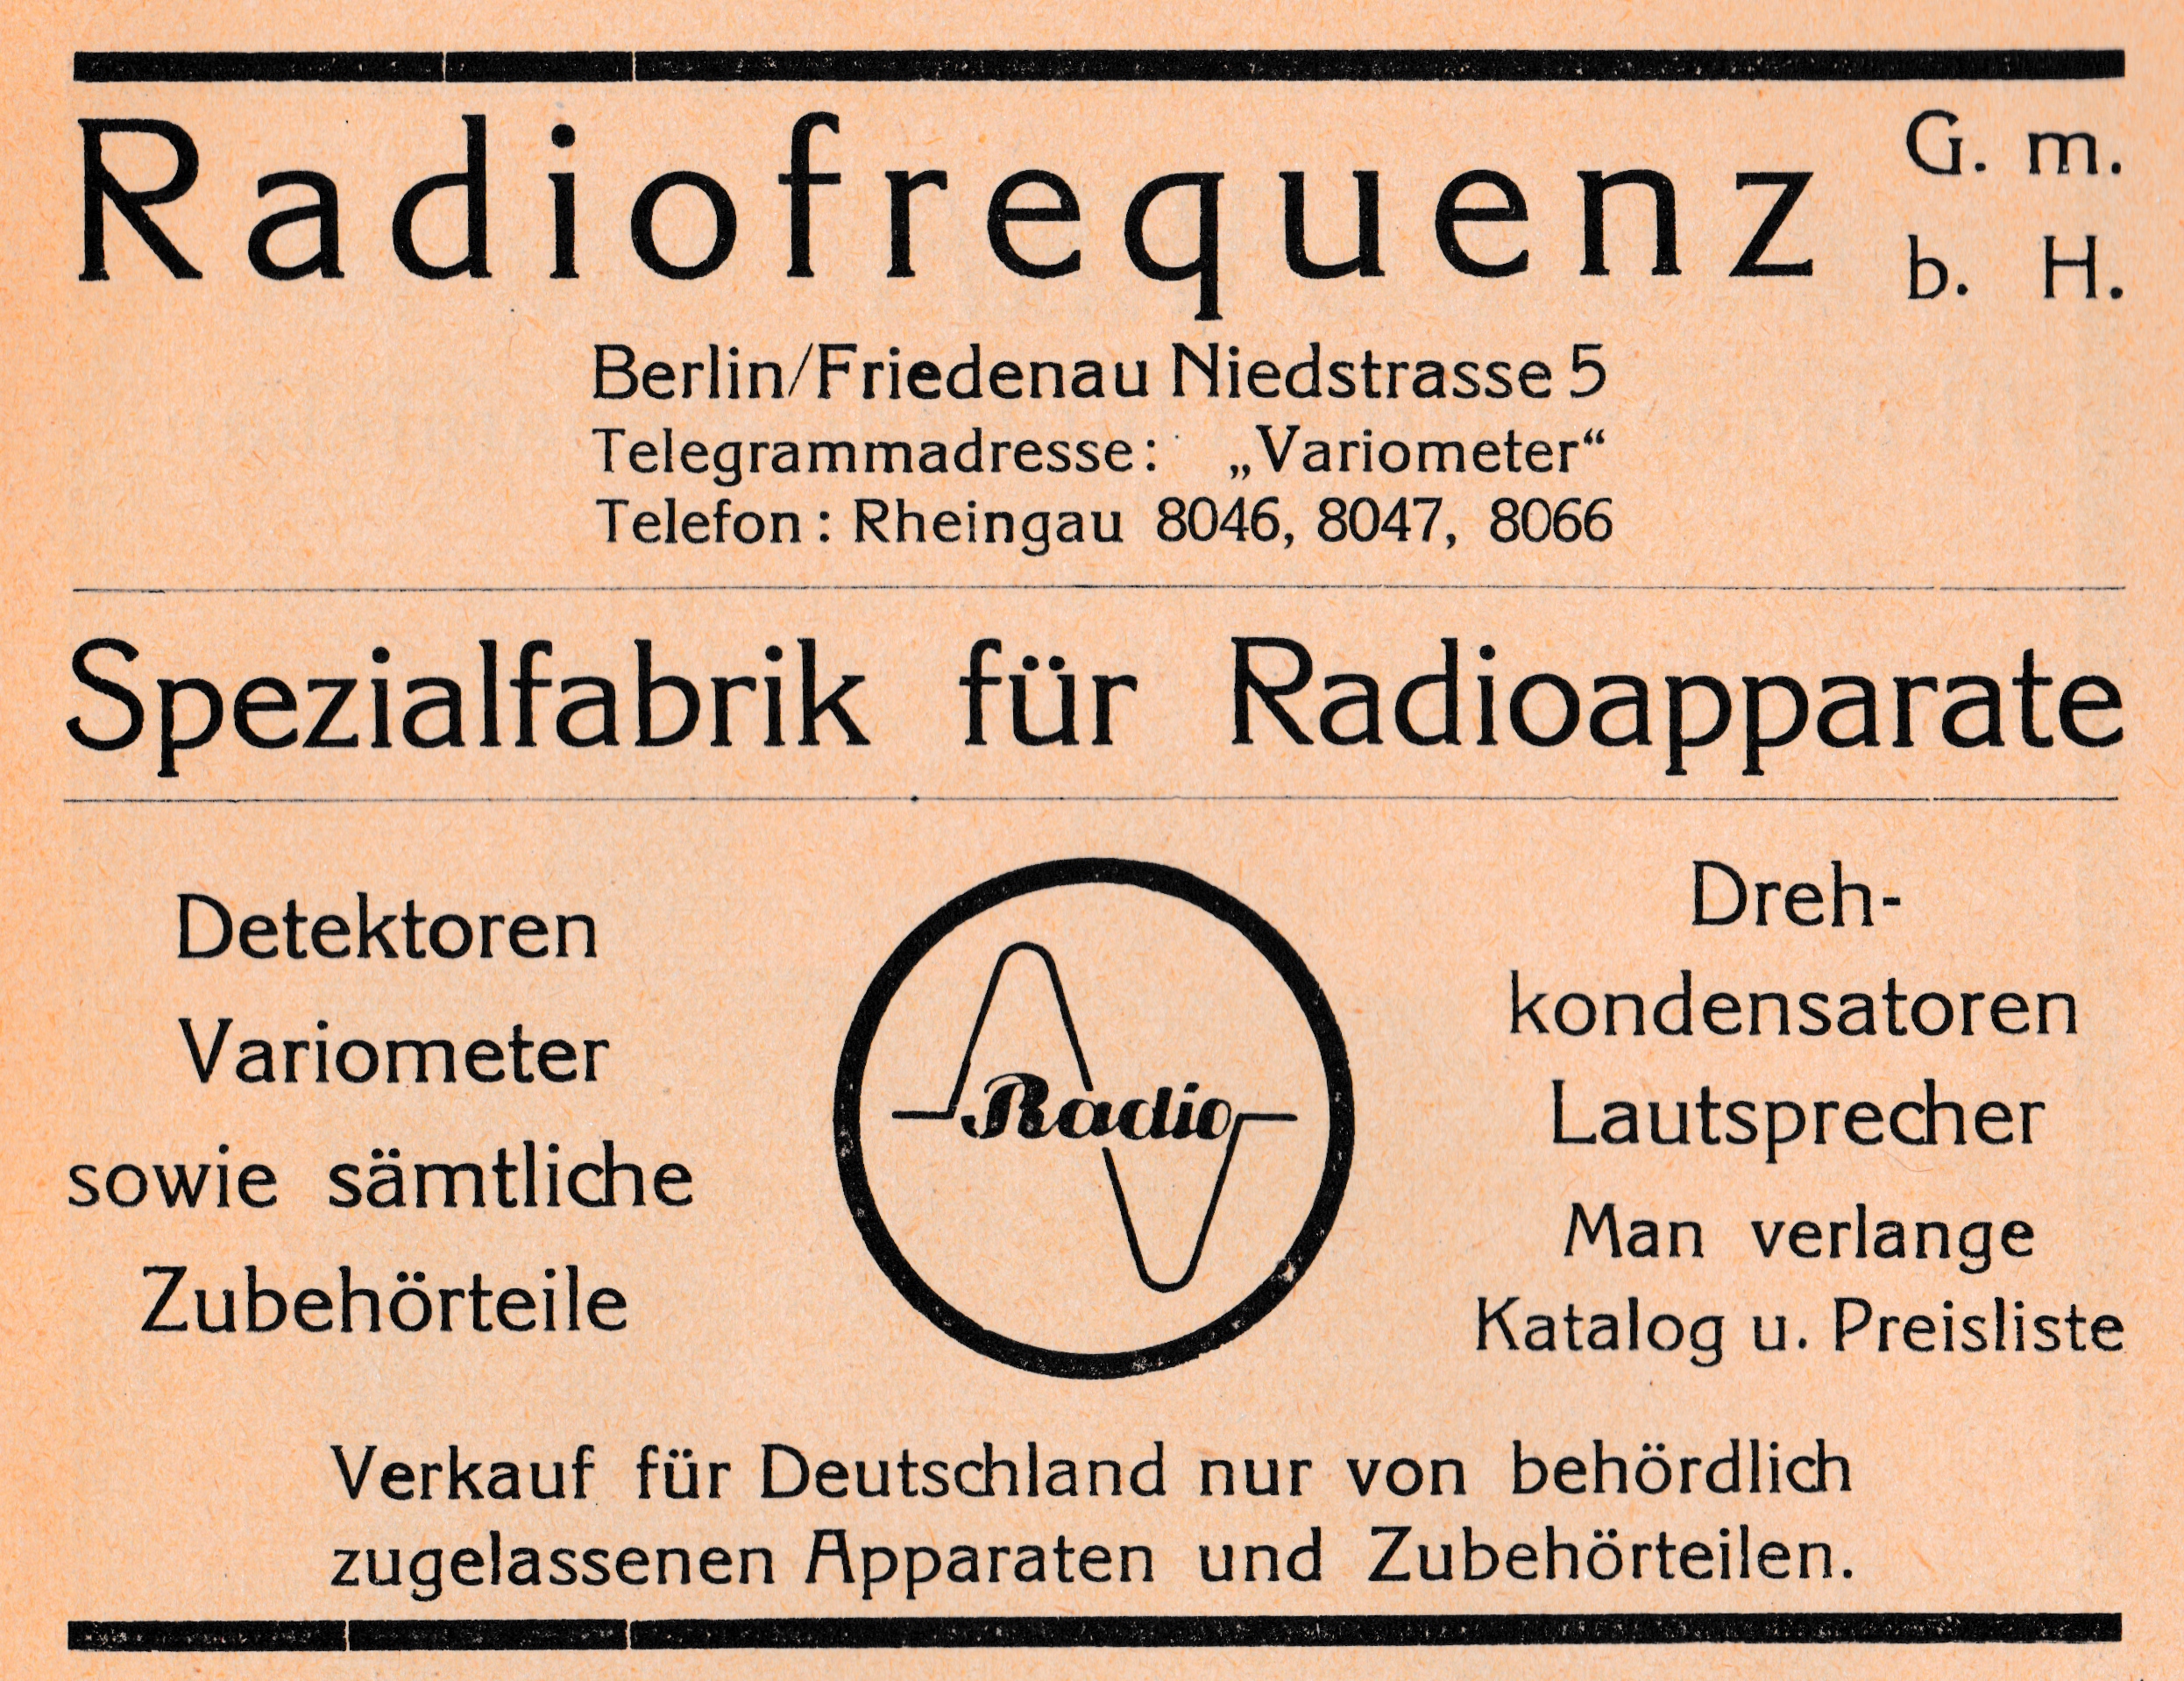 Werbung Radiofrequenz GmbH